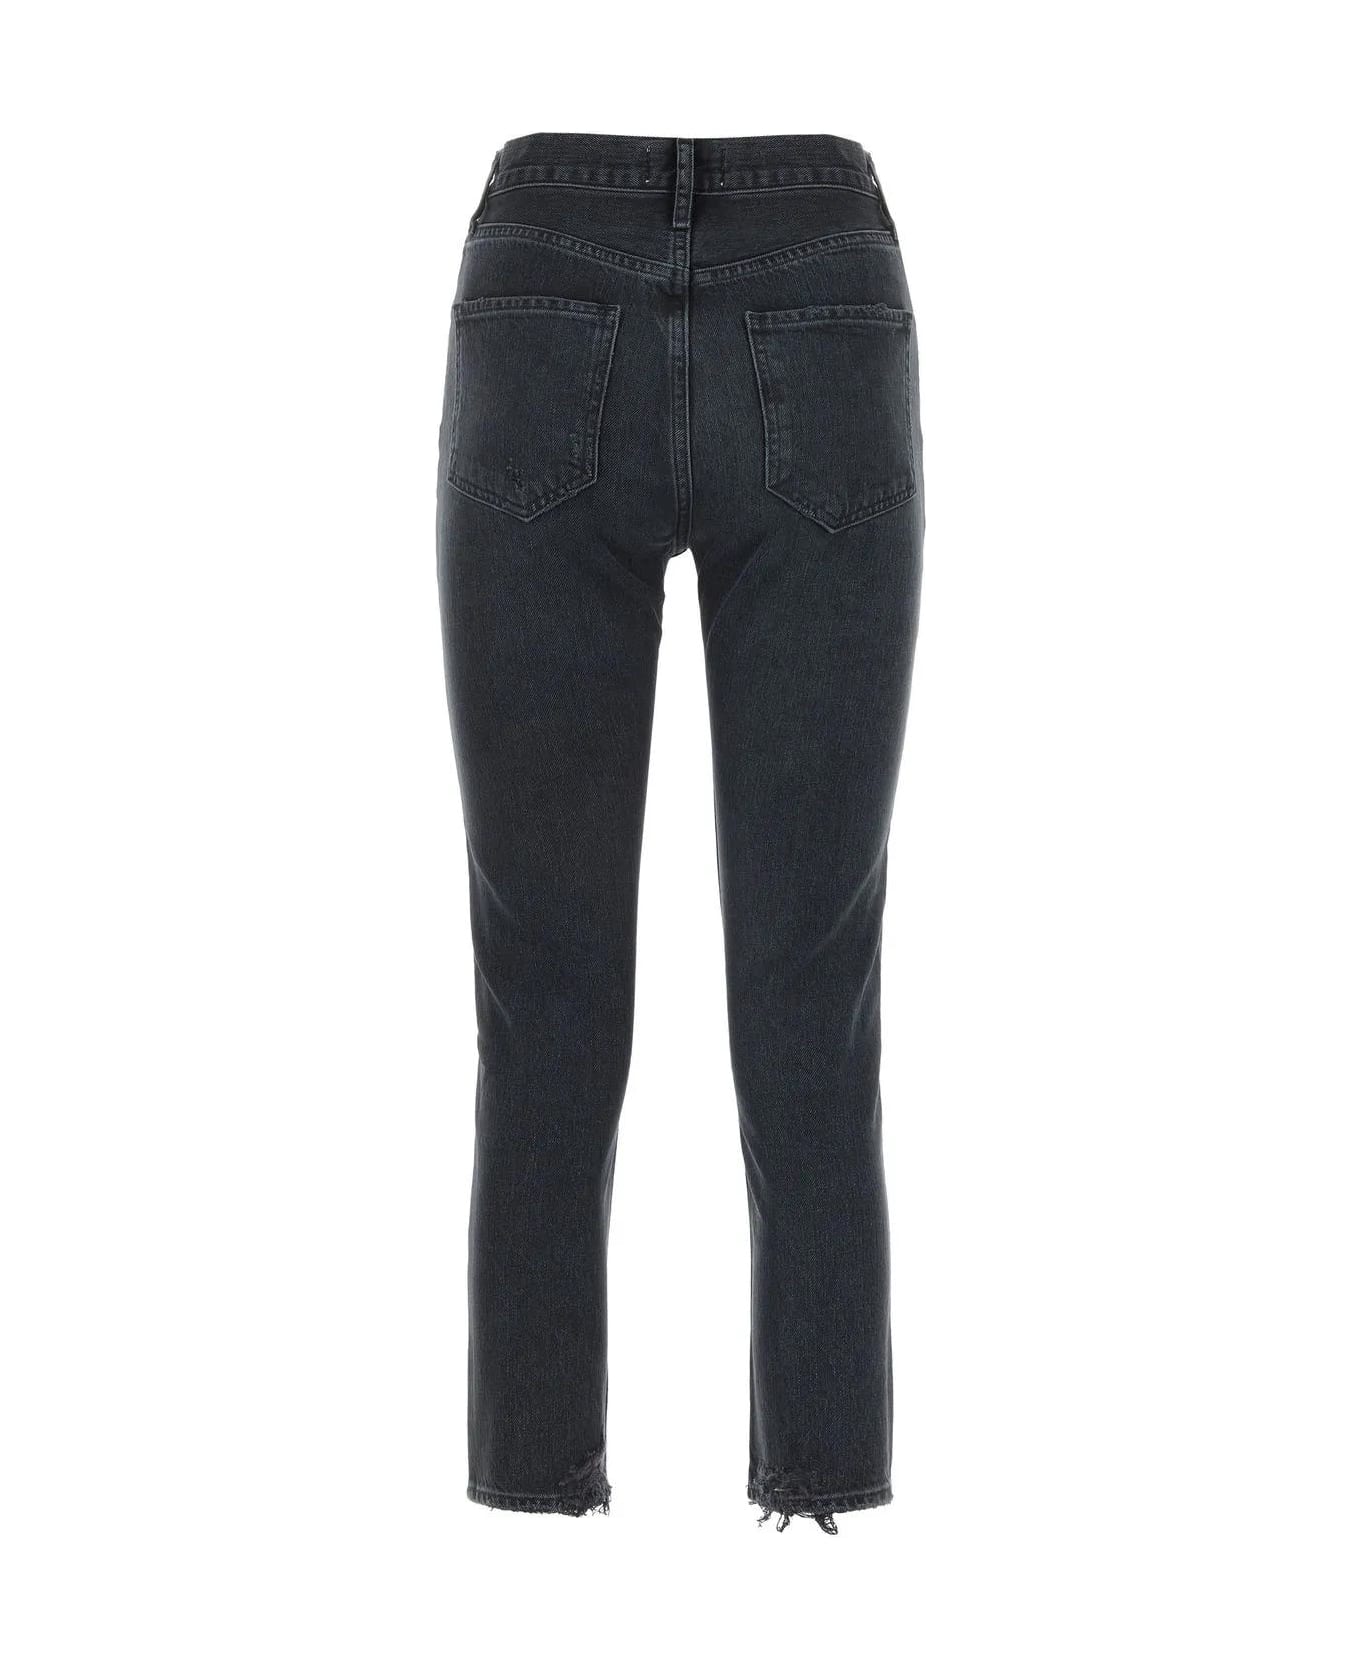 AGOLDE Denim Jeans - BLACK W DAMAGE